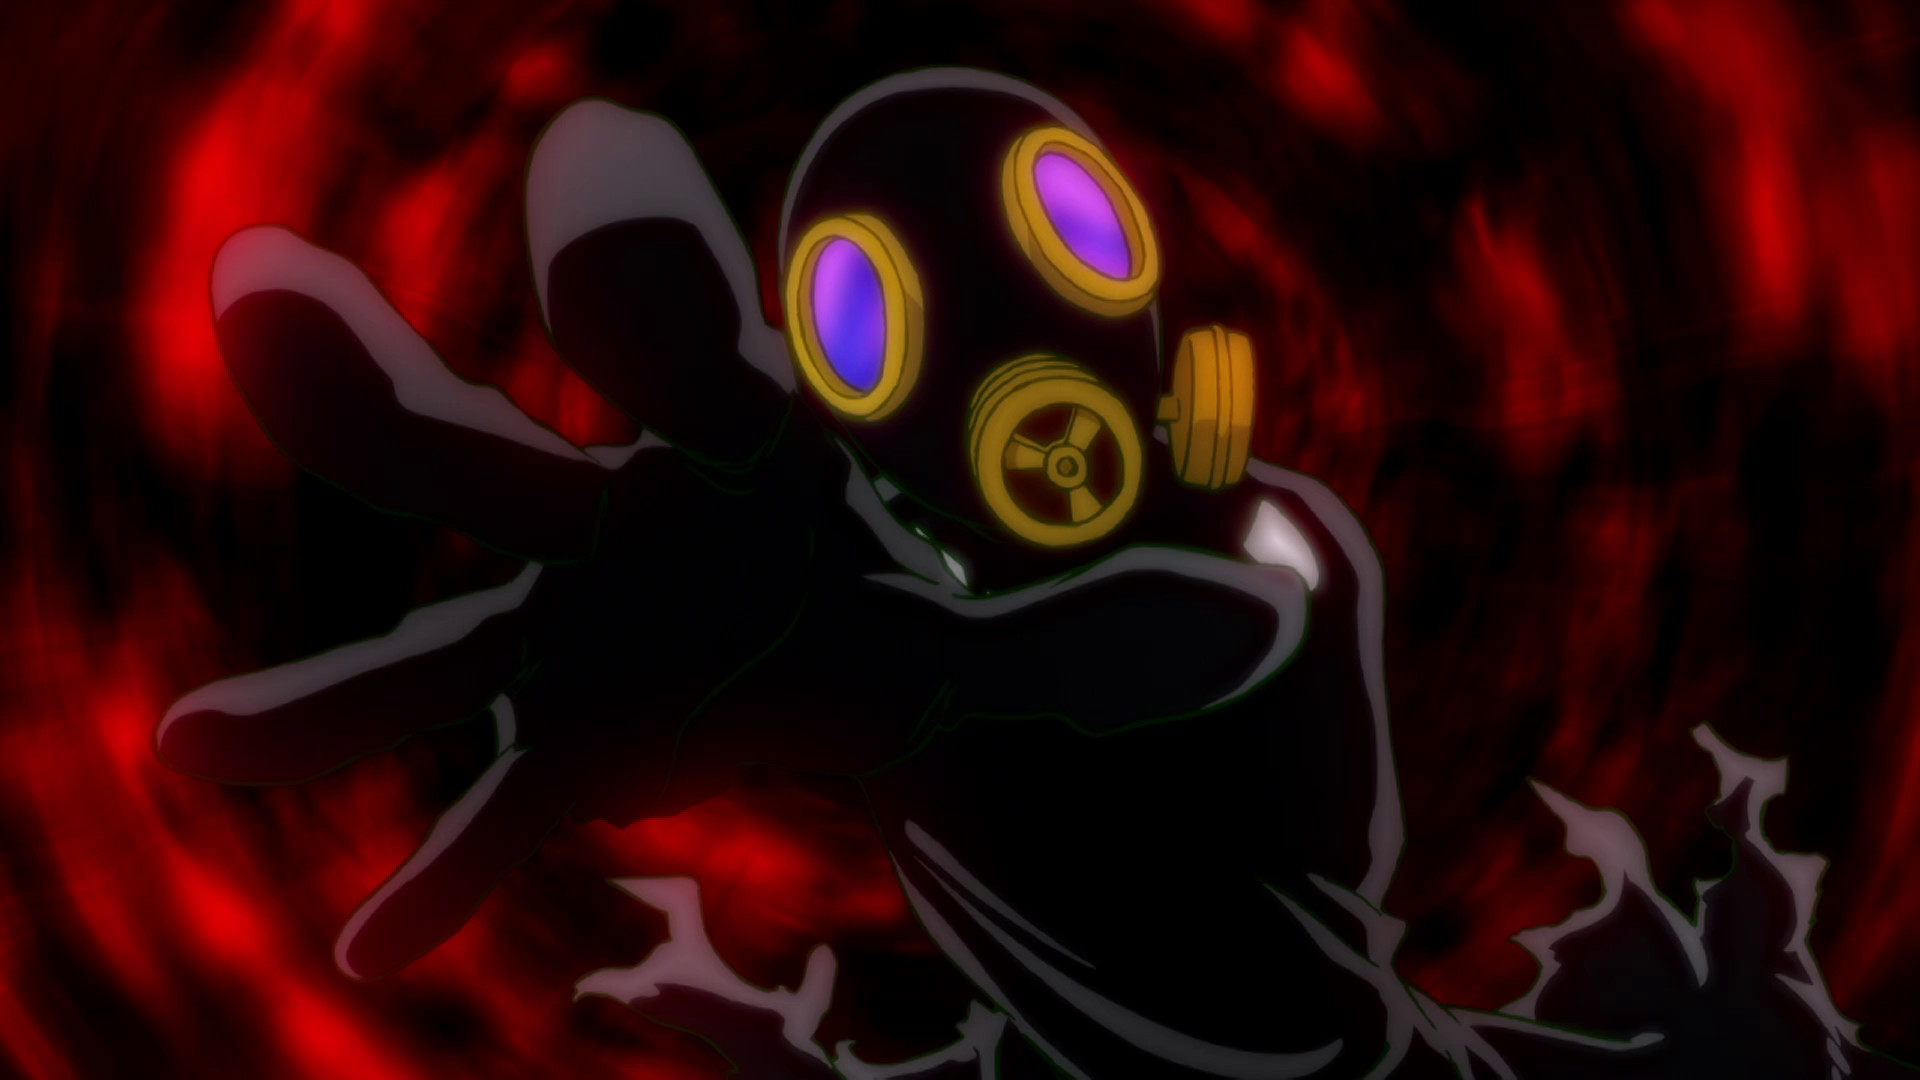 Watch Mob Psycho 100 Season 1 Episode 12 Sub Dub Anime Simulcast Funimation